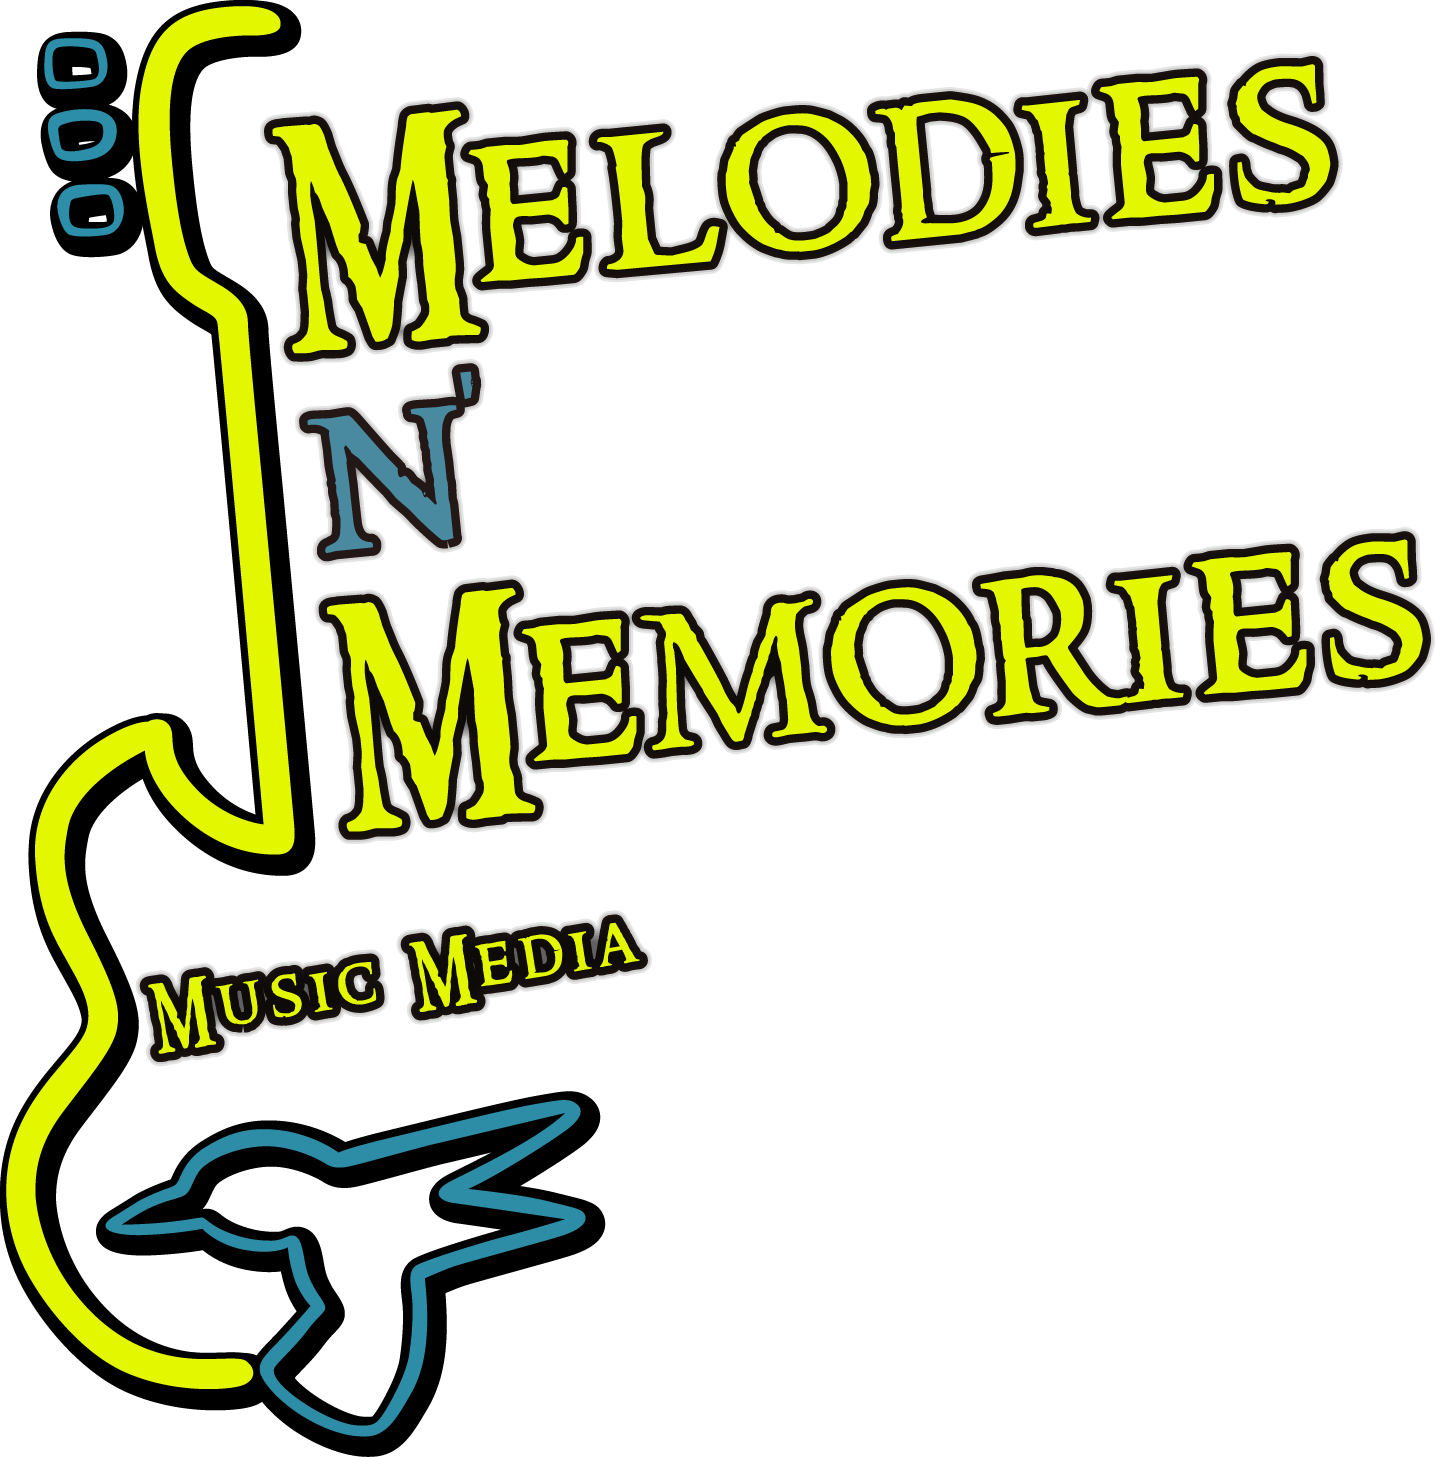 Melodies N&#39; Memories: Music Media